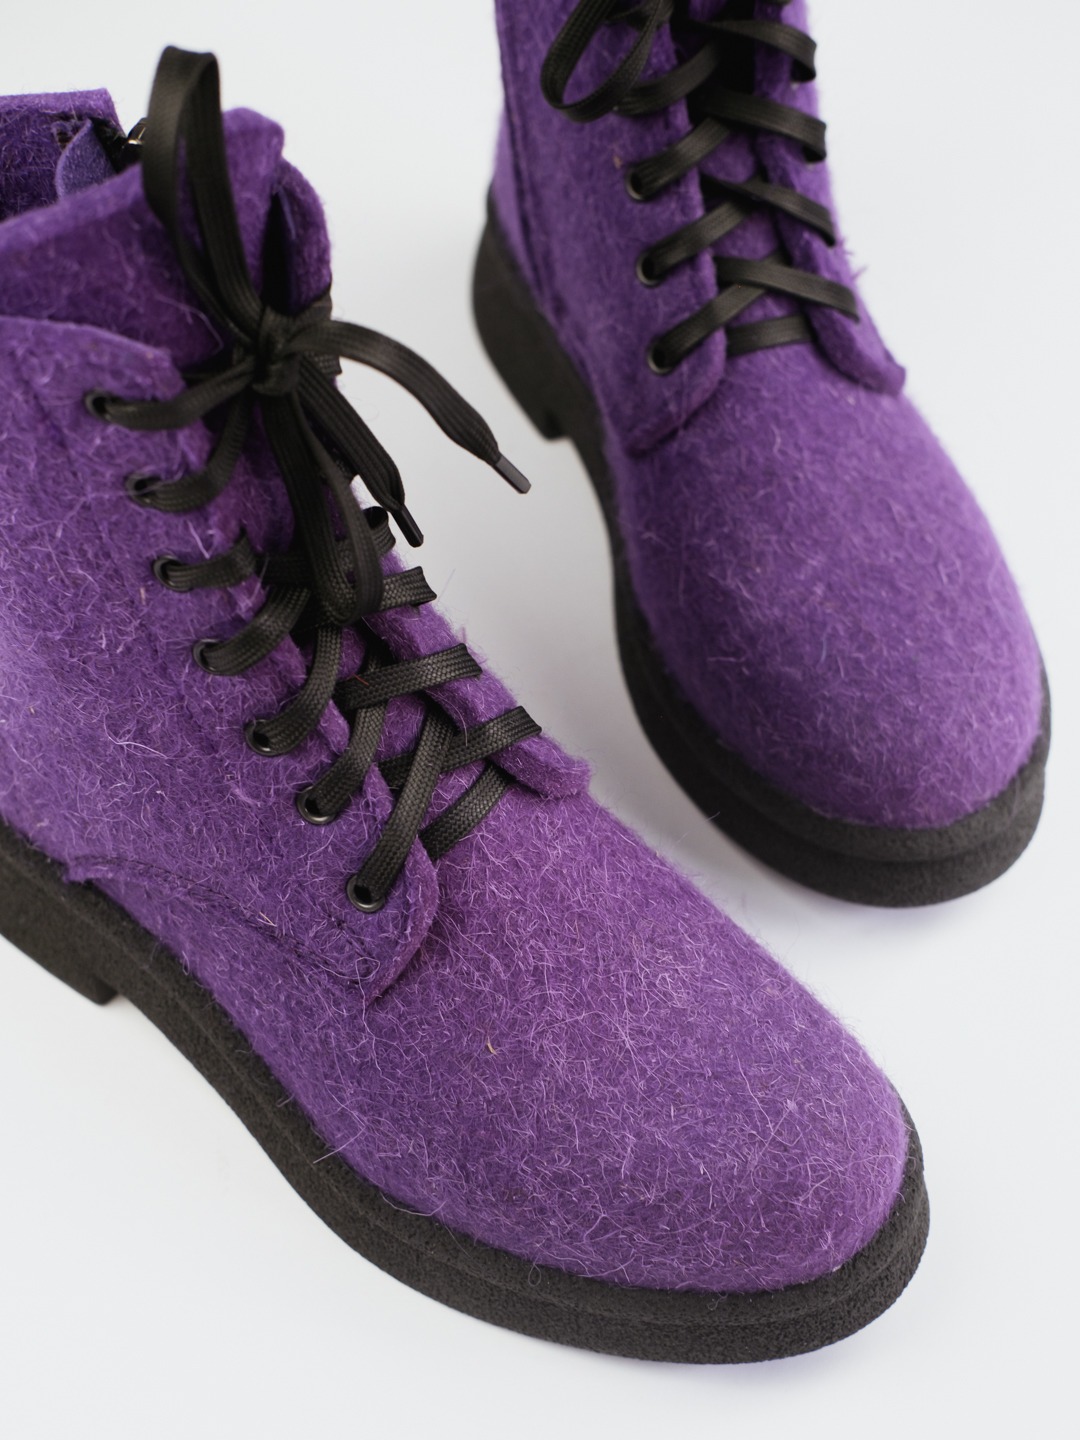 Женские ботинки 83-191-15  Фиолетовый Войлок 2